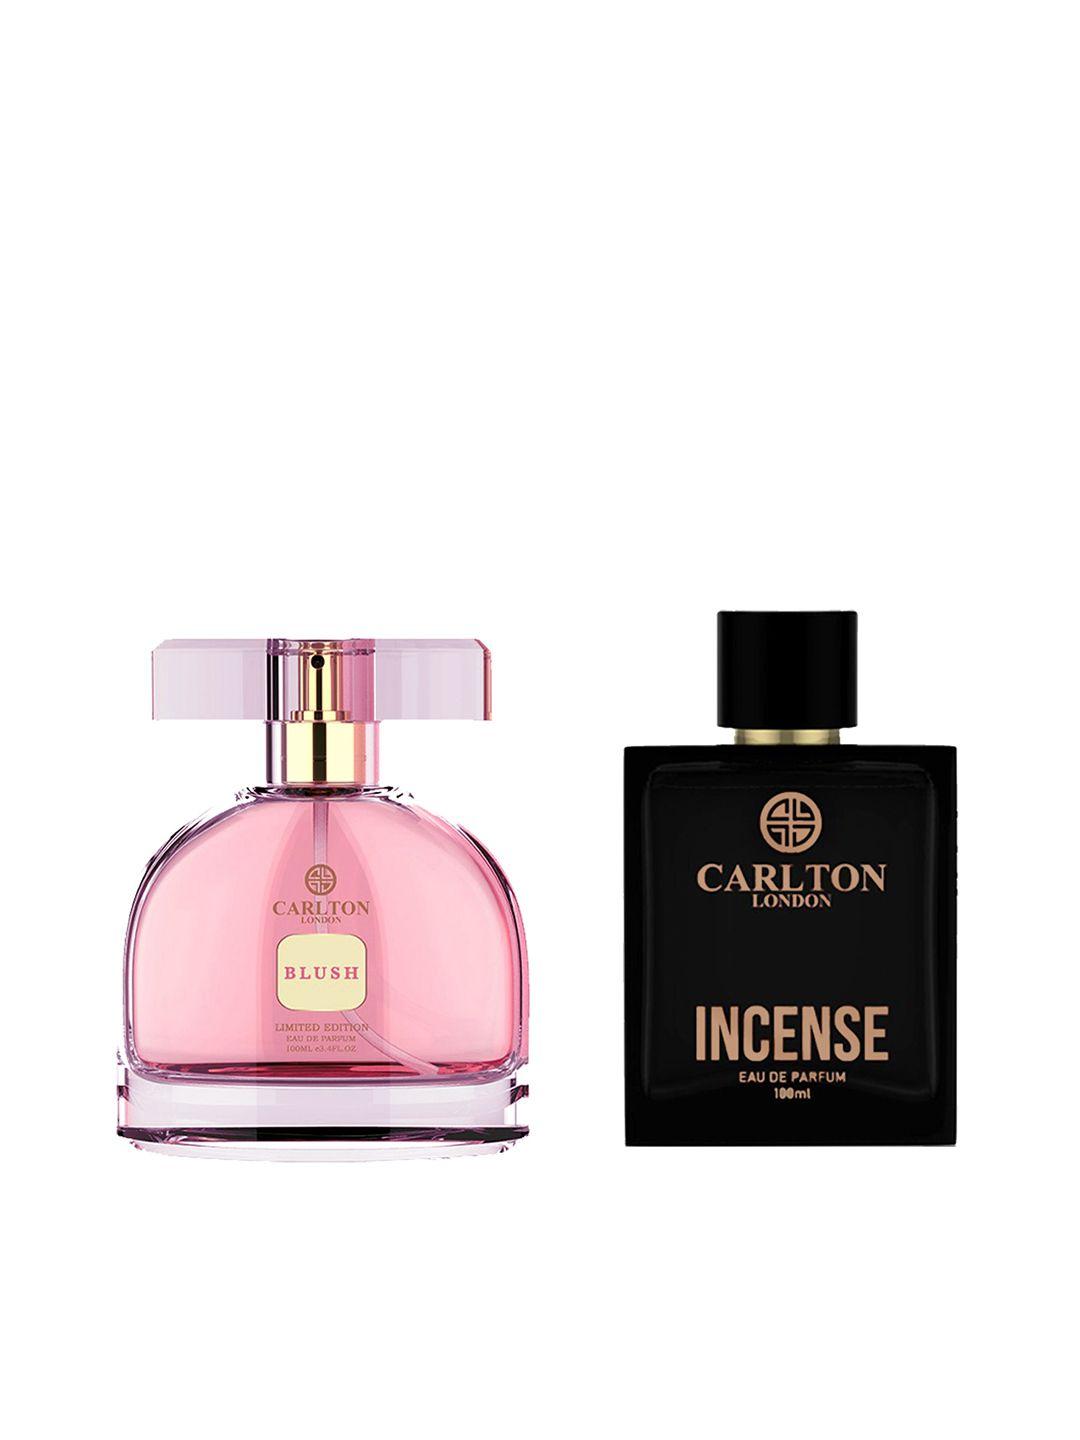 carlton-london-set-of-men-incense-&-women-blush-limited-edition-eau-de-parfum---100ml-each